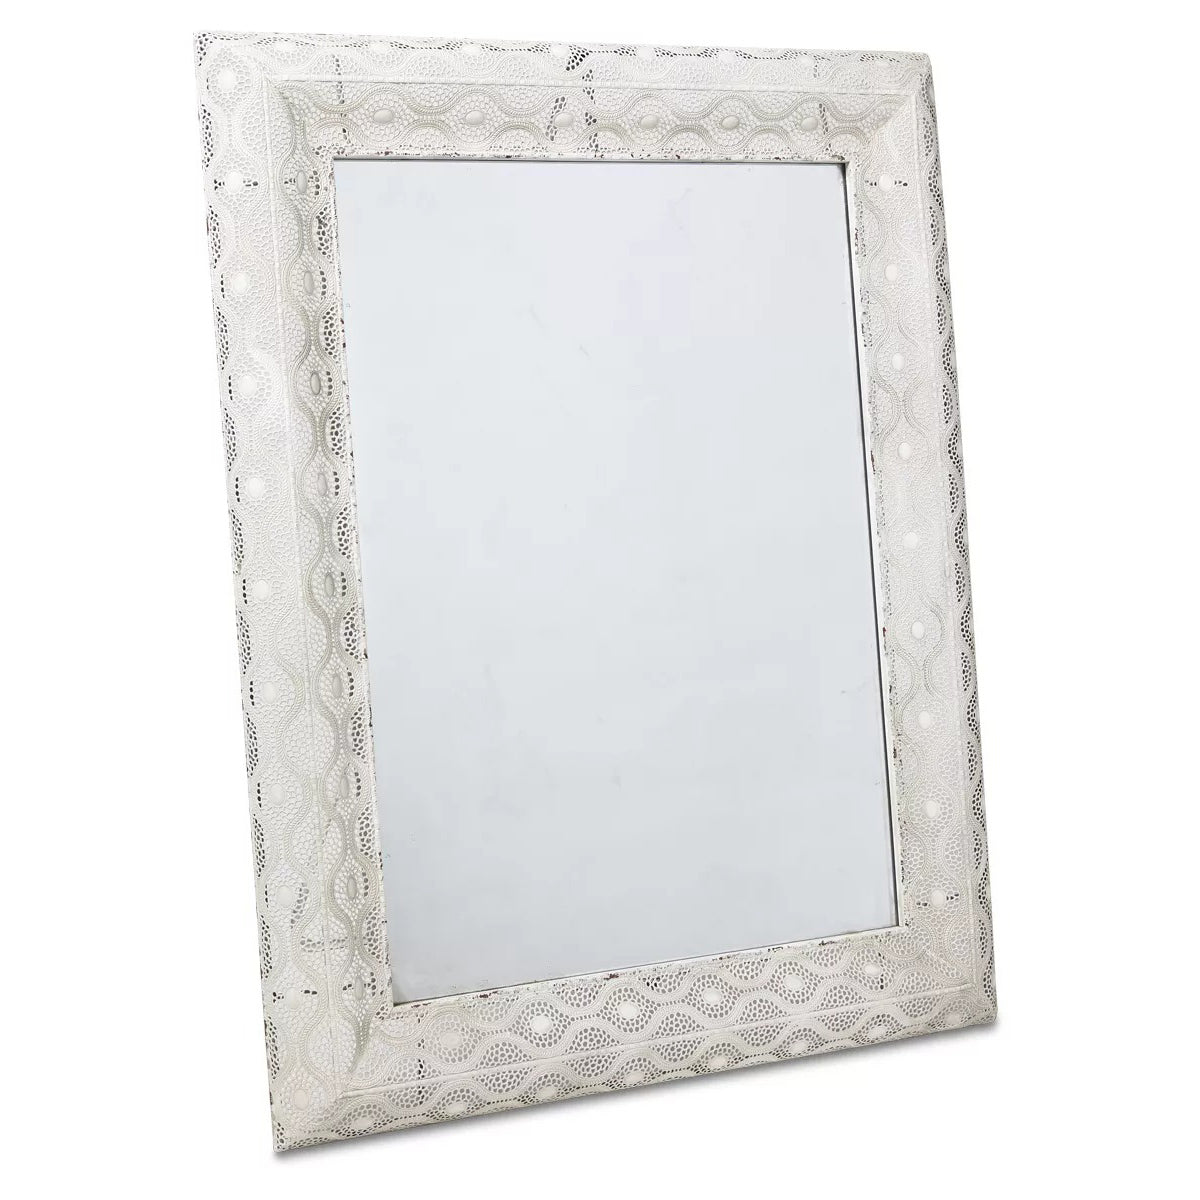 Filigree Metal Rectangular Wall Mirror - Antique White